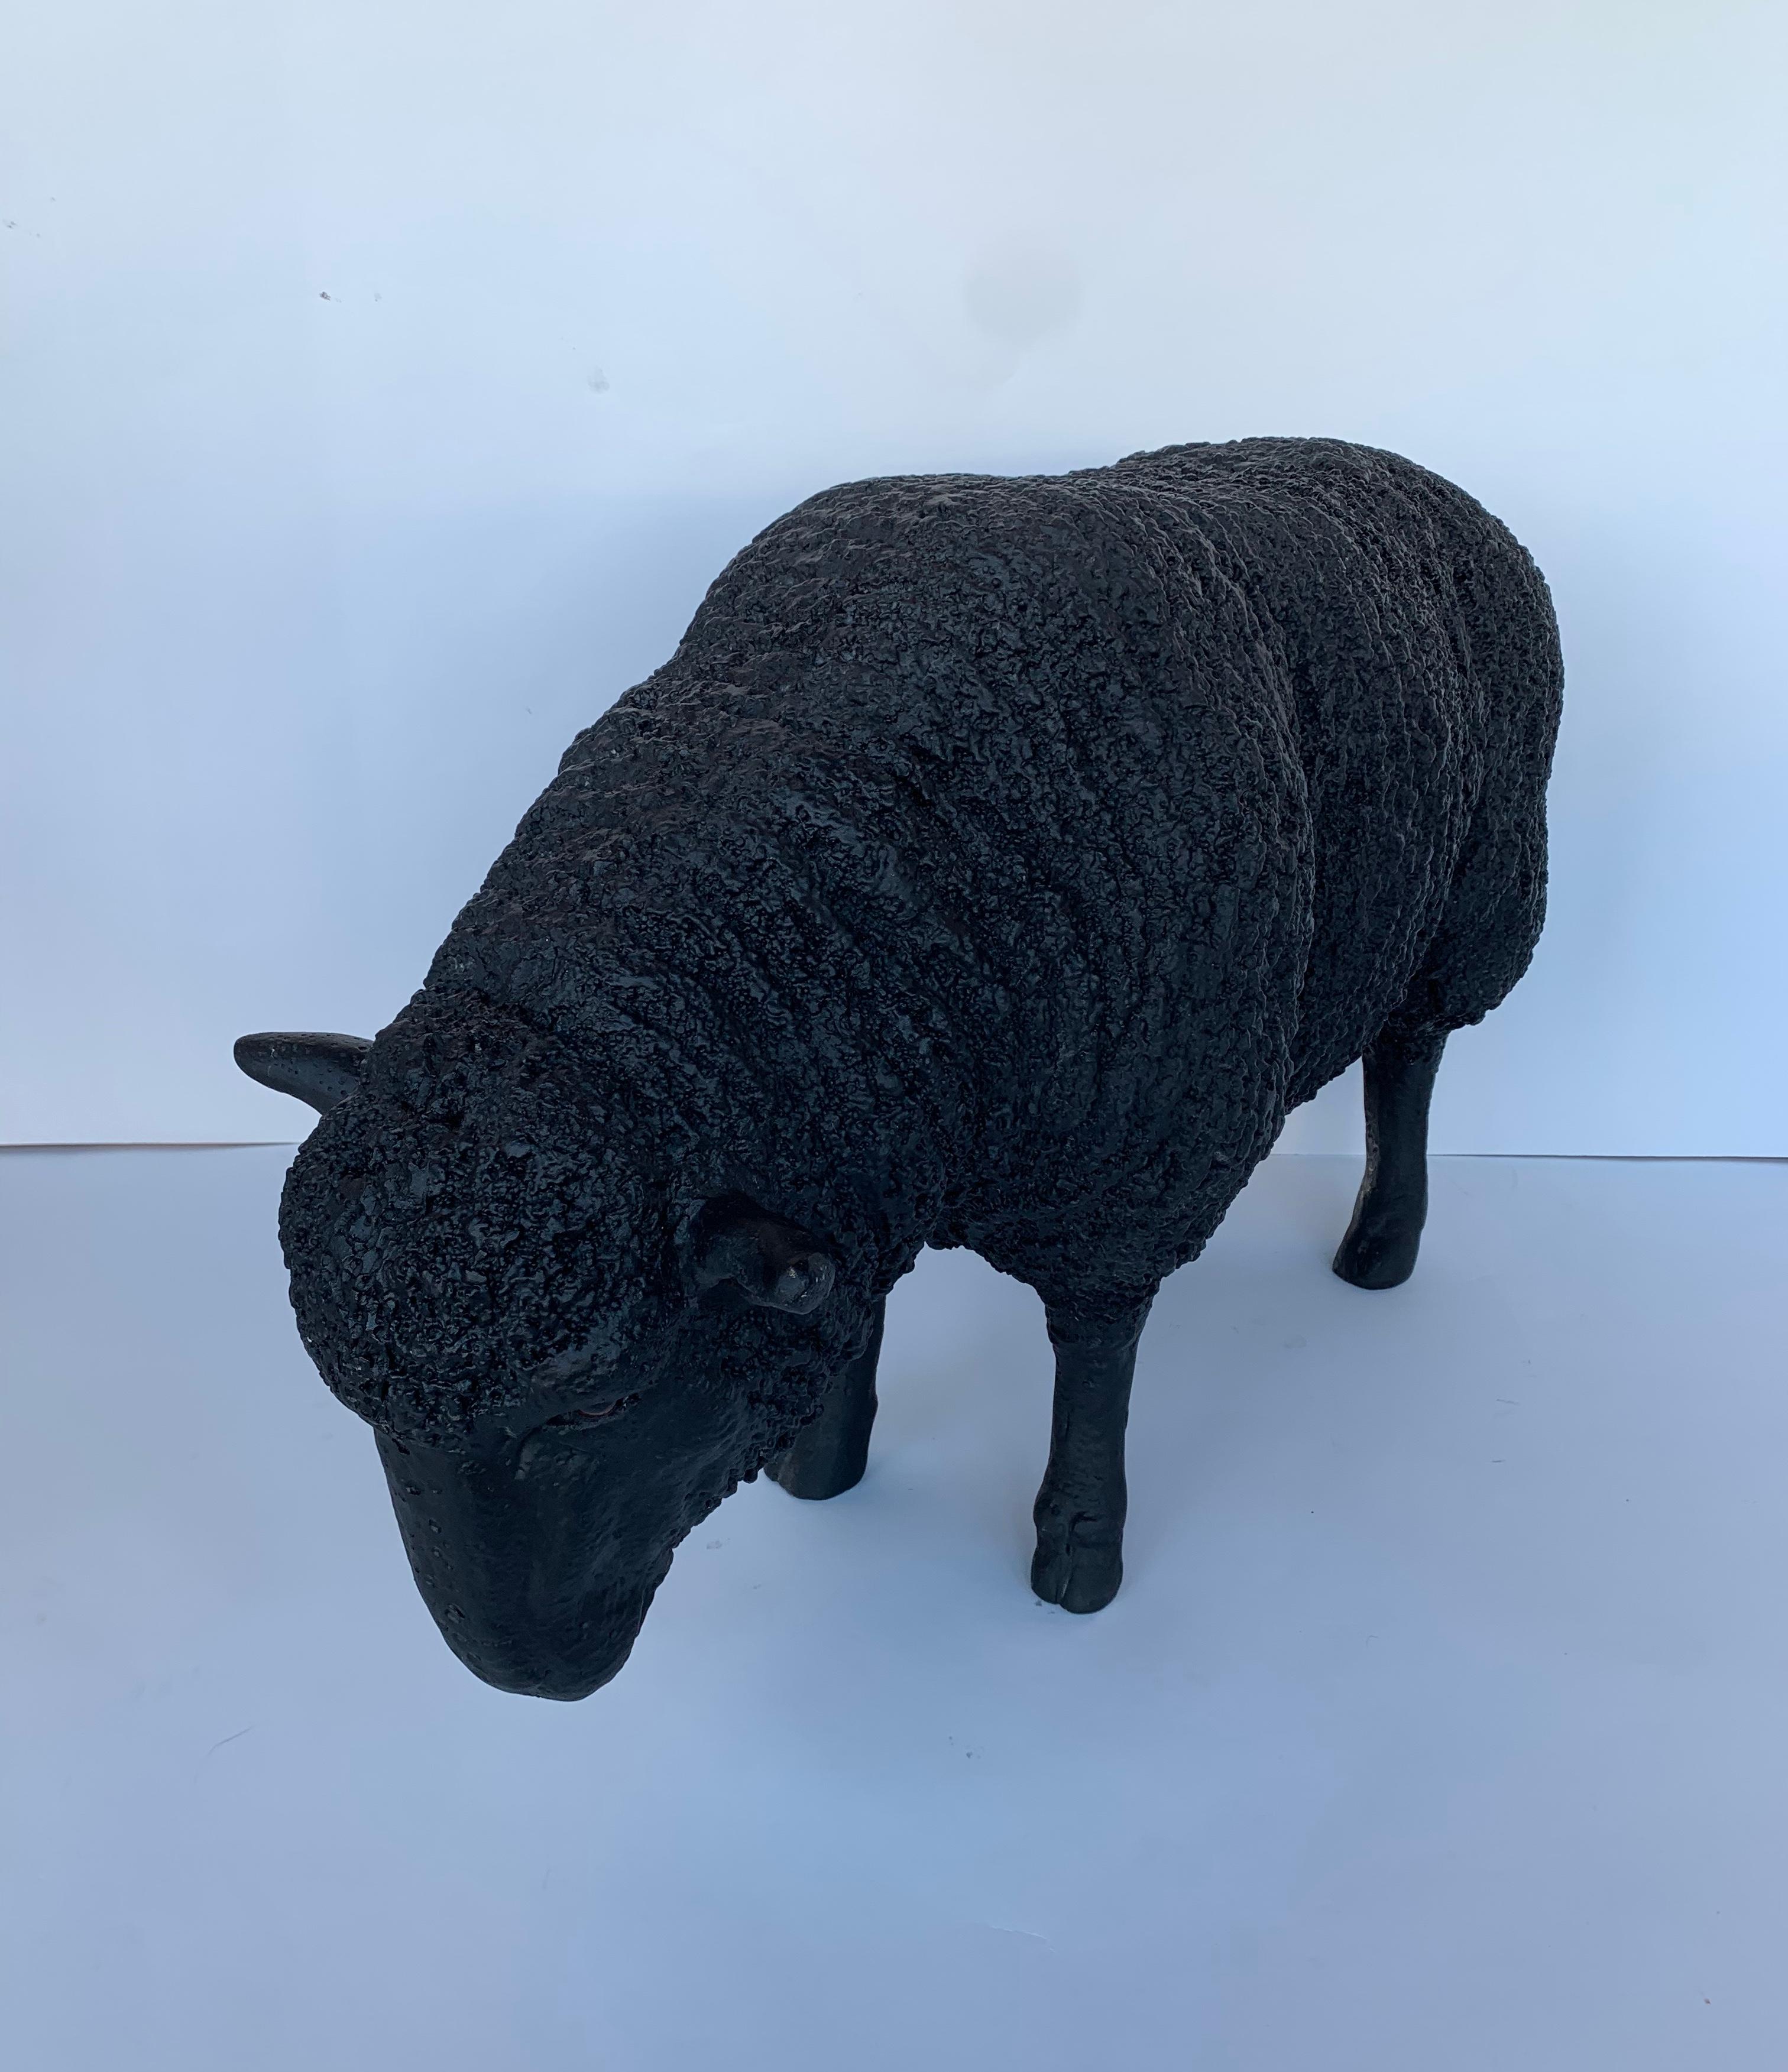 Black fiberglass sculpture of a sheep grazing.